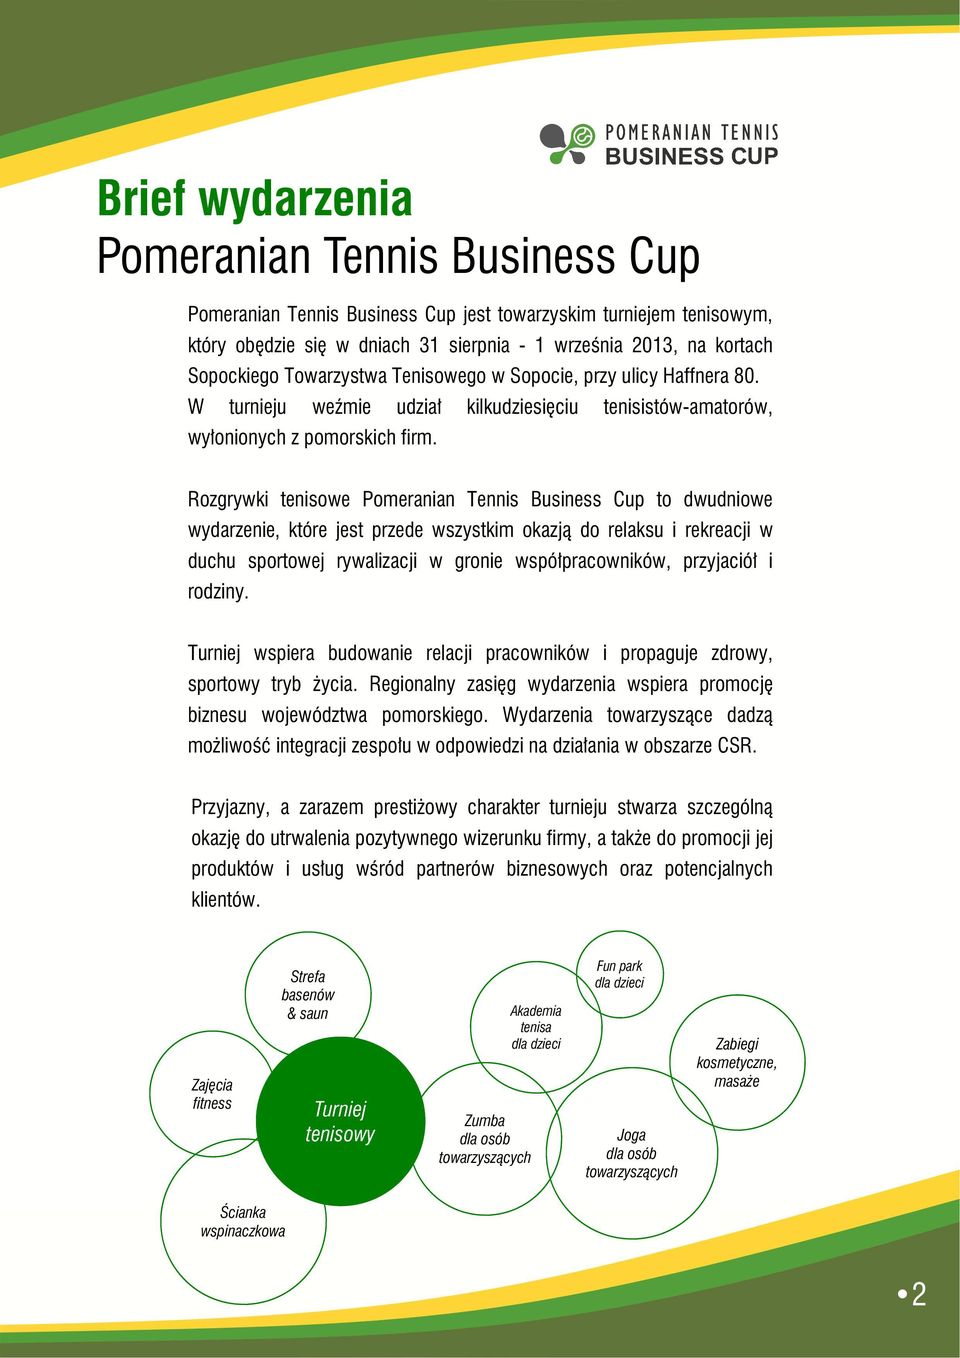 Rozgrywki tenisowe Pomeranian Tennis Business Cup to dwudniowe wydarzenie, które jest przede wszystkim okazją do relaksu i rekreacji w duchu sportowej rywalizacji w gronie współpracowników,